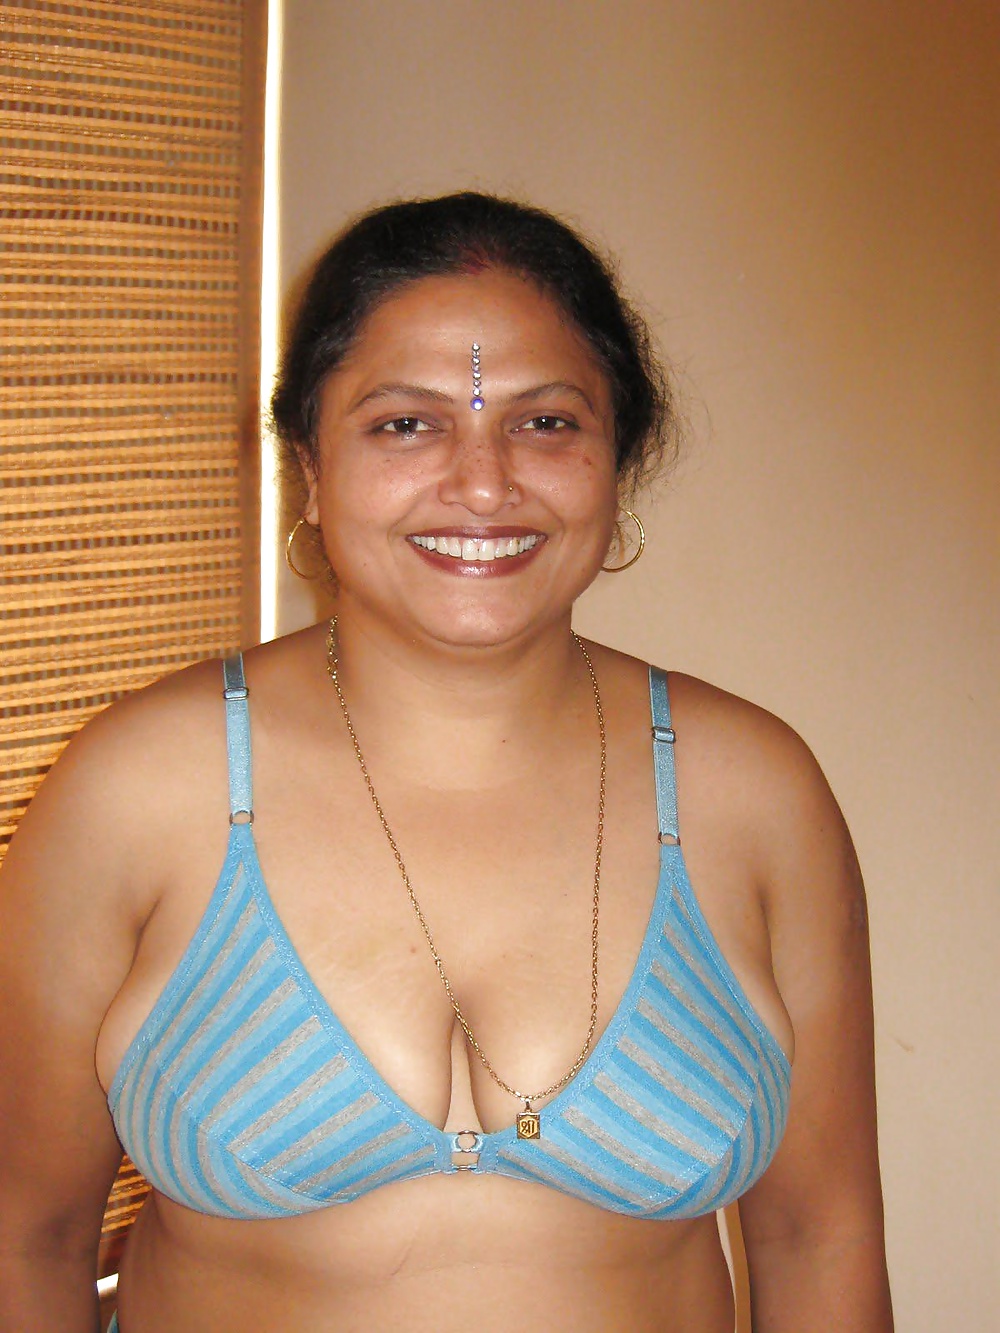 インド人妻スジャータ - インド人デシのAVセット 9.8
 #29570738